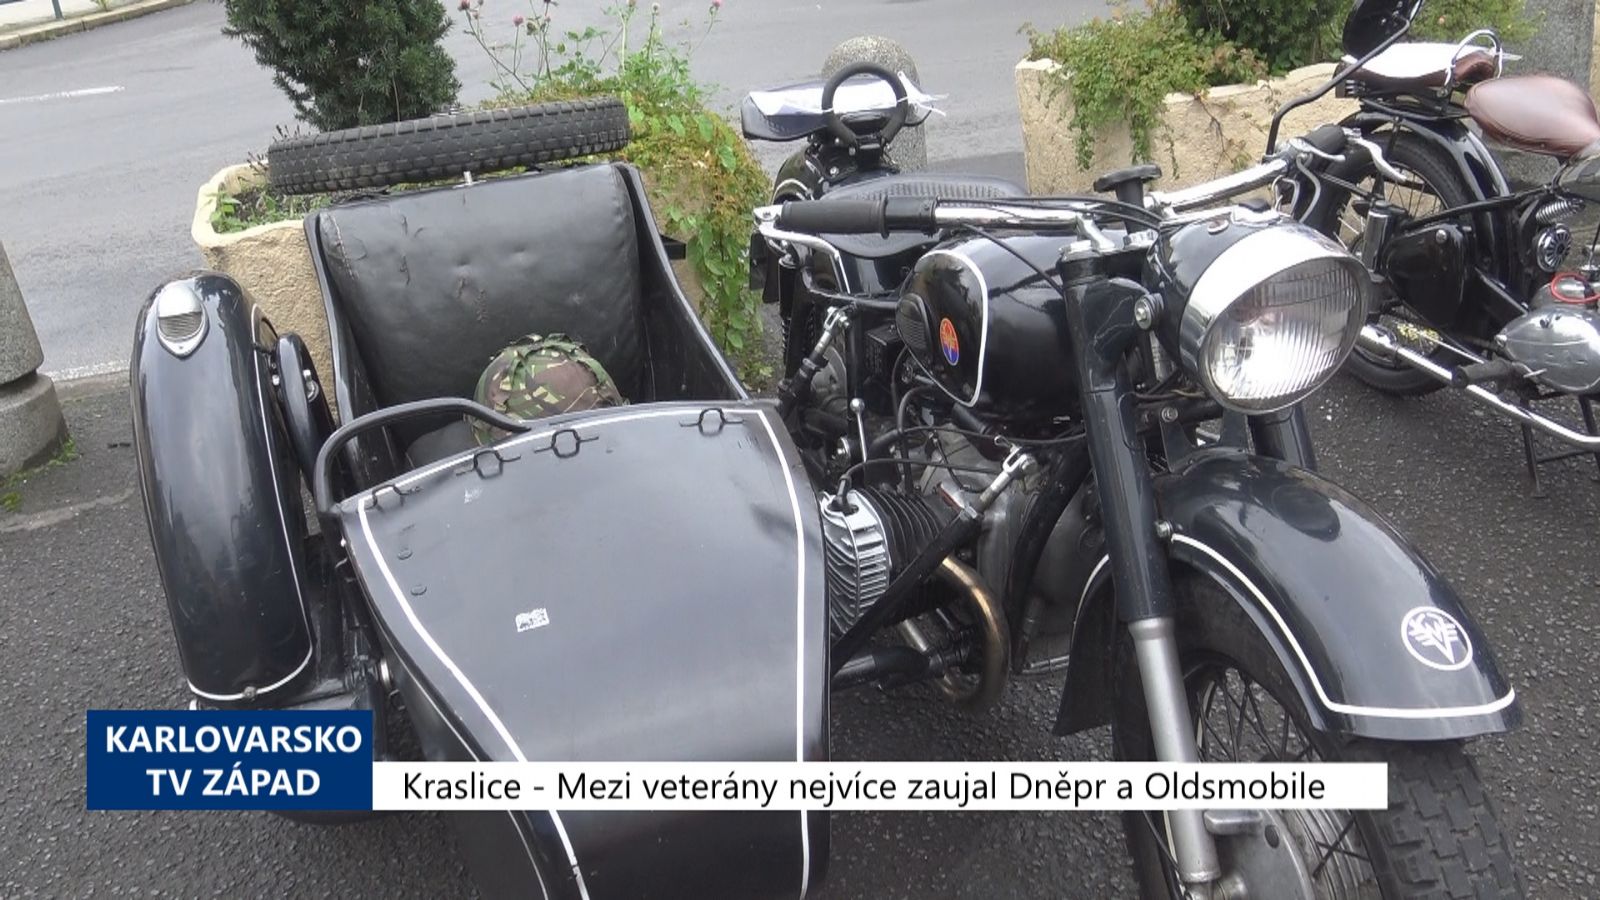 Kraslice: Mezi veterány nejvíce zaujal Dněpr a Oldsmobile (TV Západ)